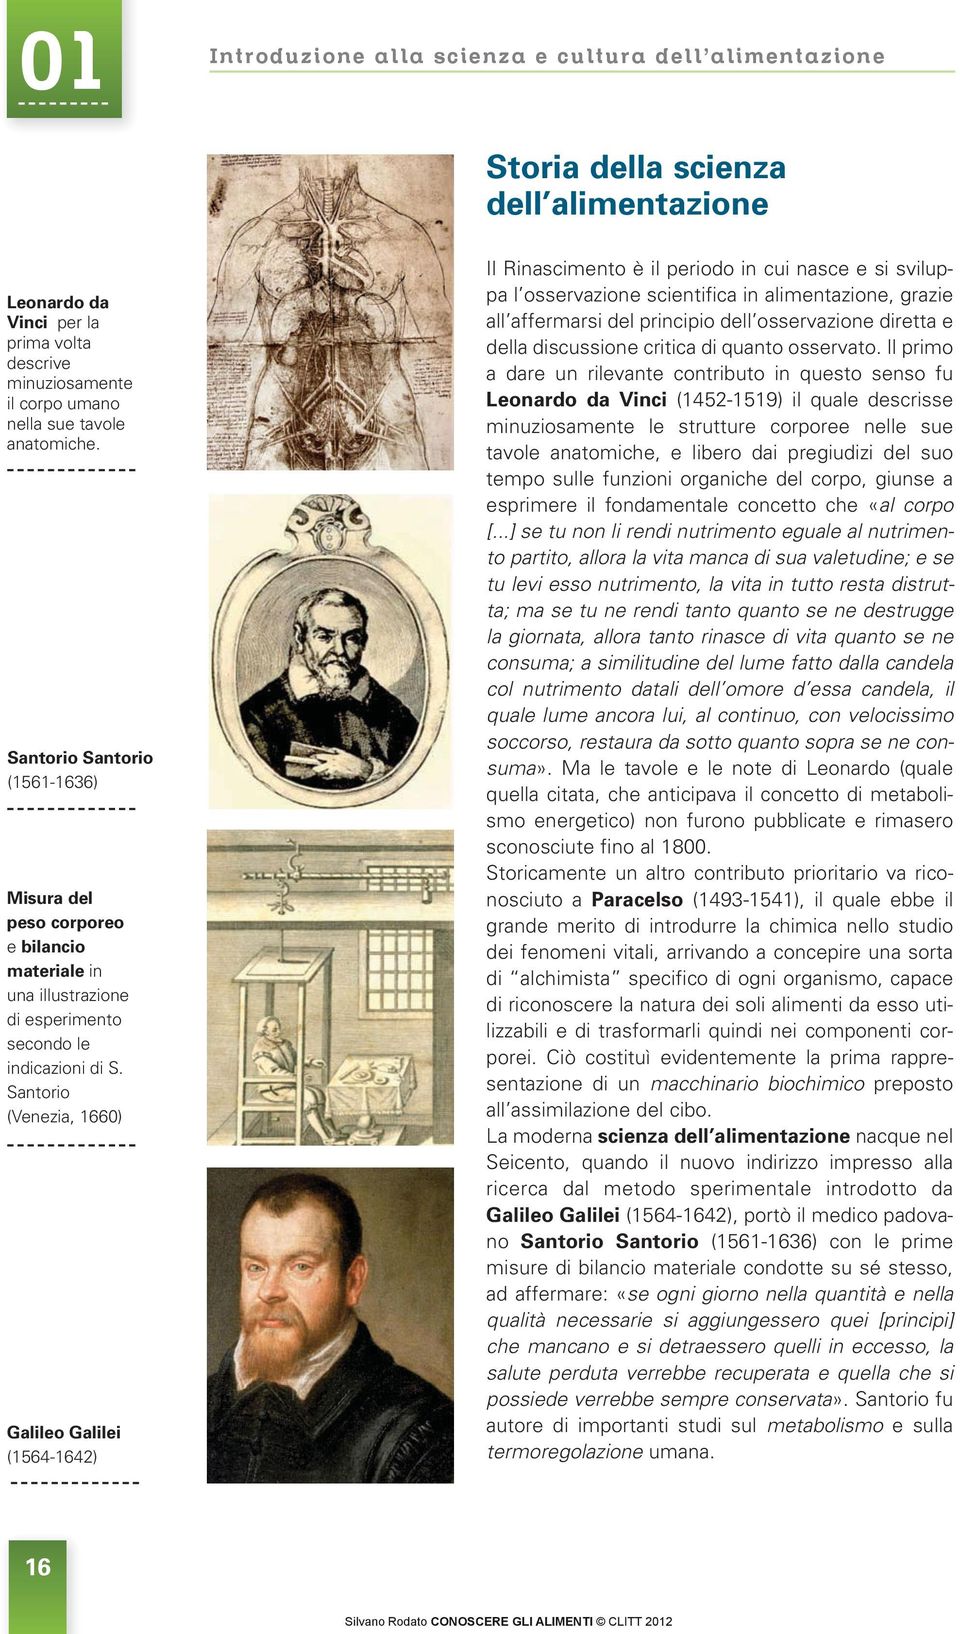 Santorio (Venezia, 1660) Galileo Galilei (1564-1642) Il Rinascimento è il periodo in cui nasce e si sviluppa l osservazione scientifica in alimentazione, grazie all af fermarsi del principio dell